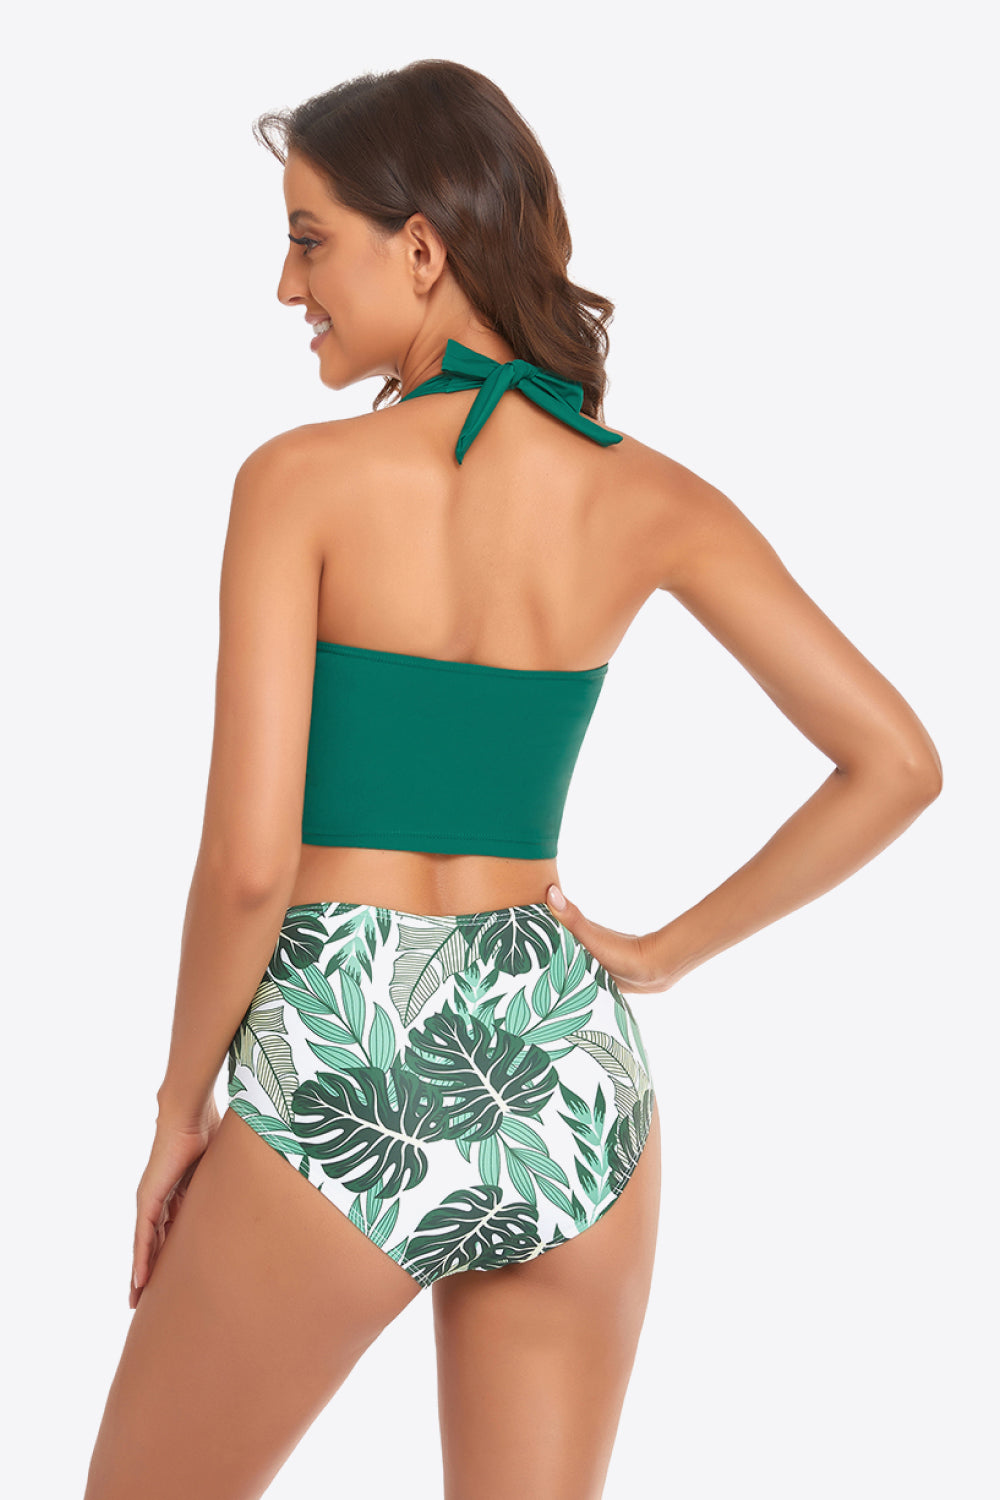 Botanical Print Halter Neck Drawstring Detail Bikini Set - Bikinis & Tankinis - FITGGINS